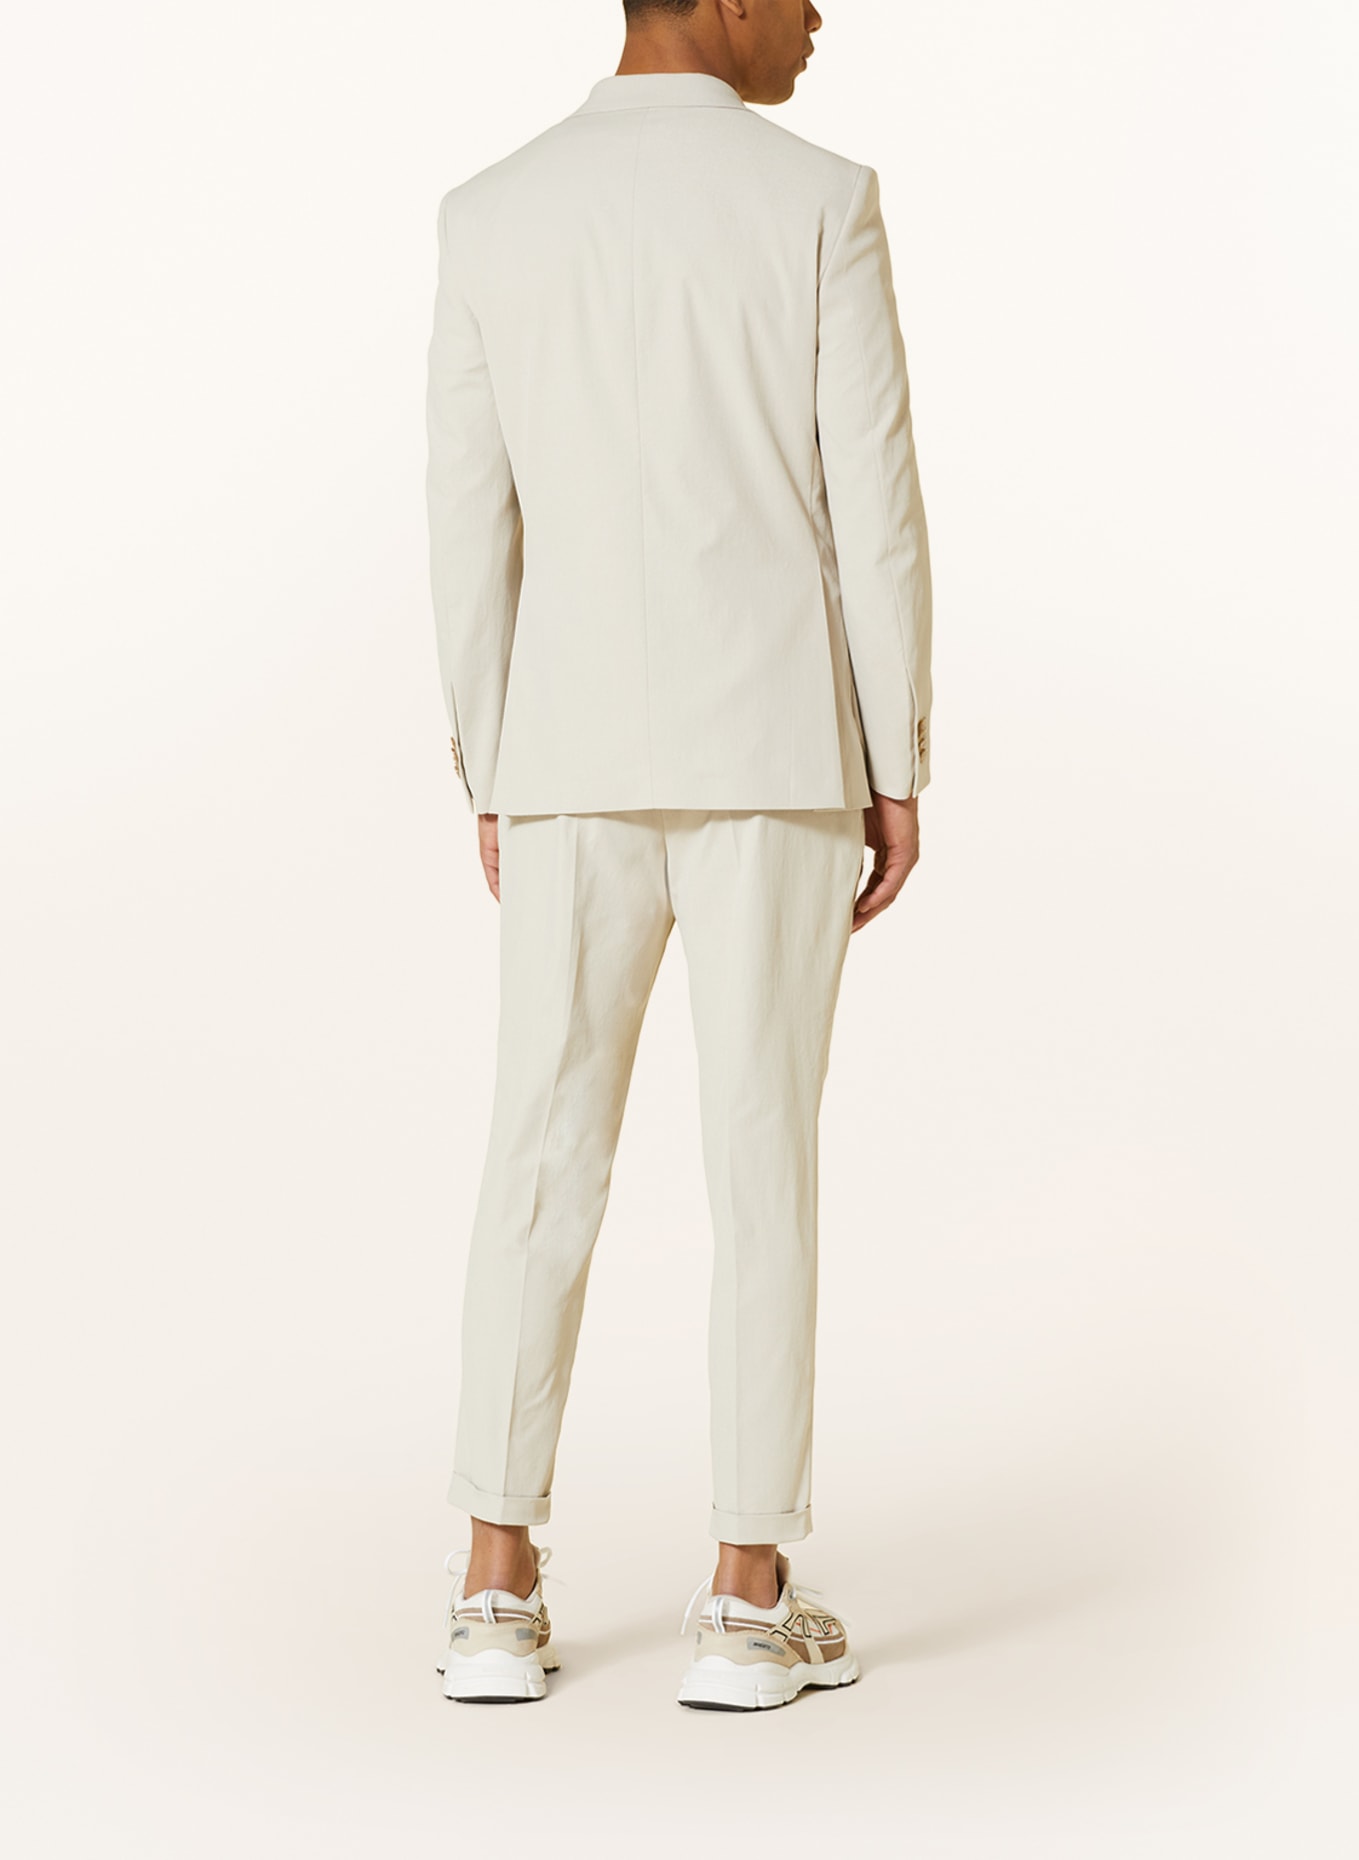 SPSR Suit jacket extra slim fit, Color: BEIGE (Image 3)